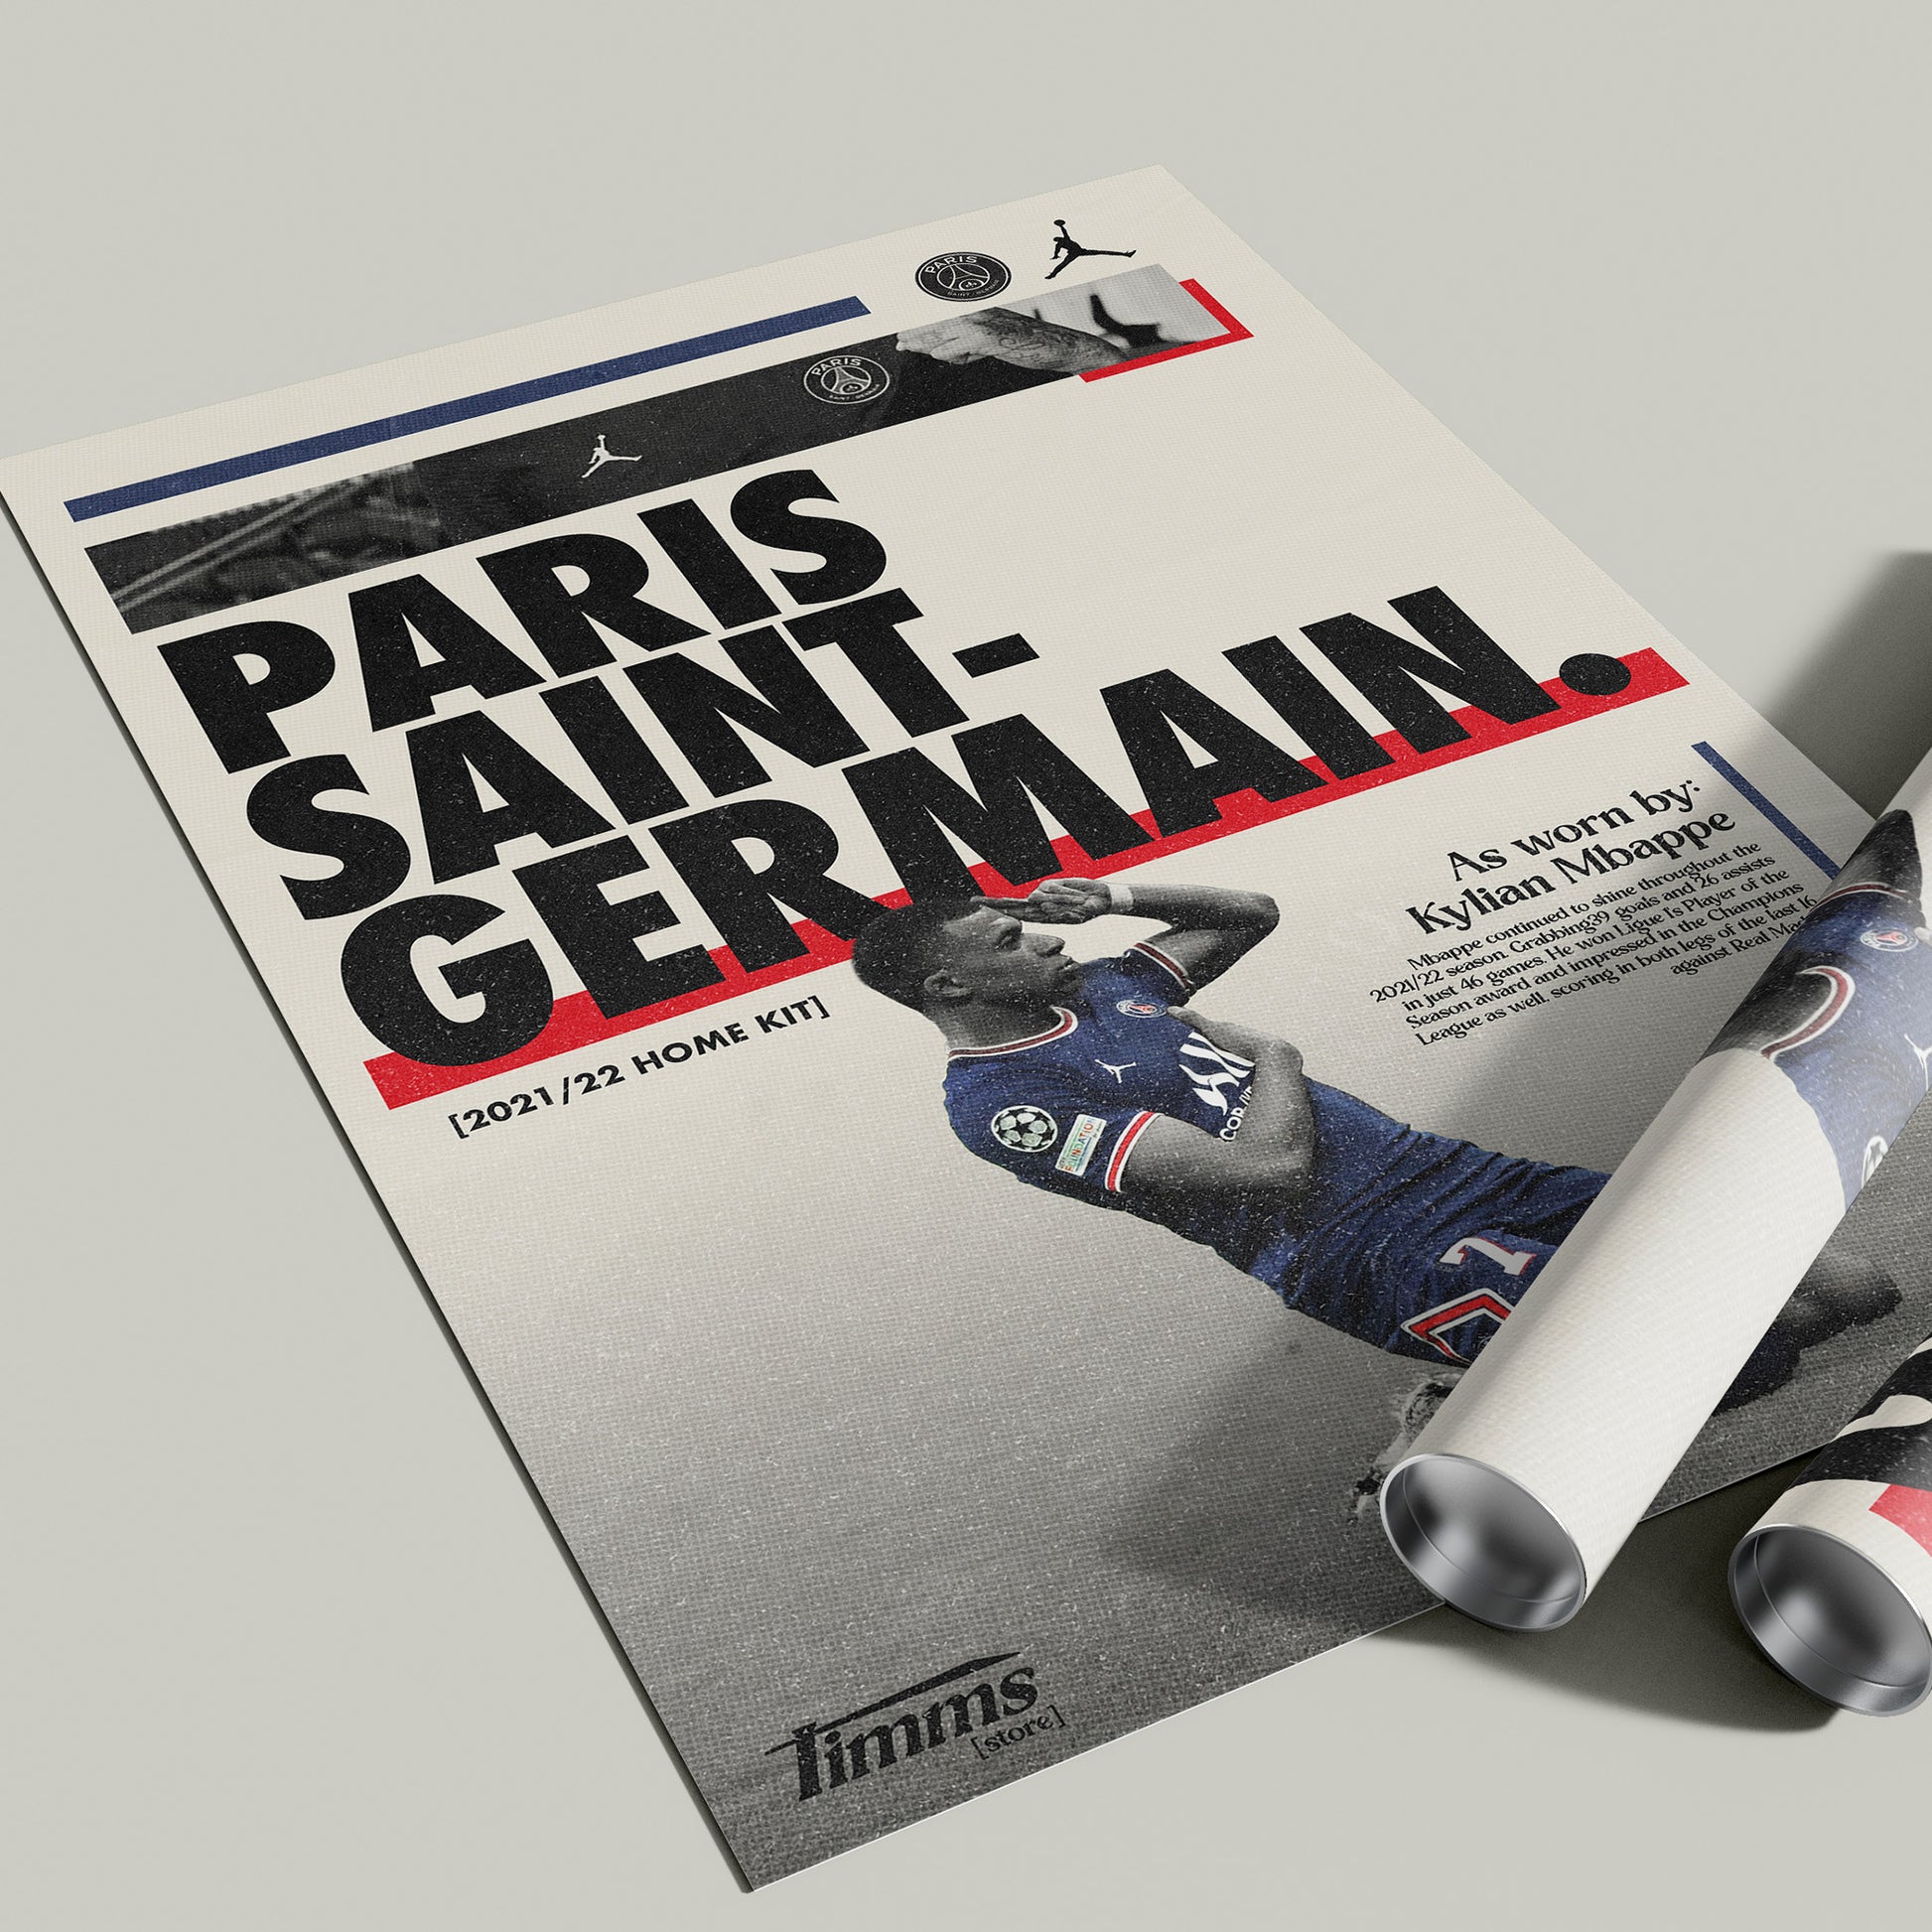 Paris Saint-Germain - Kylian Mbappé Retro Poster limited to 100